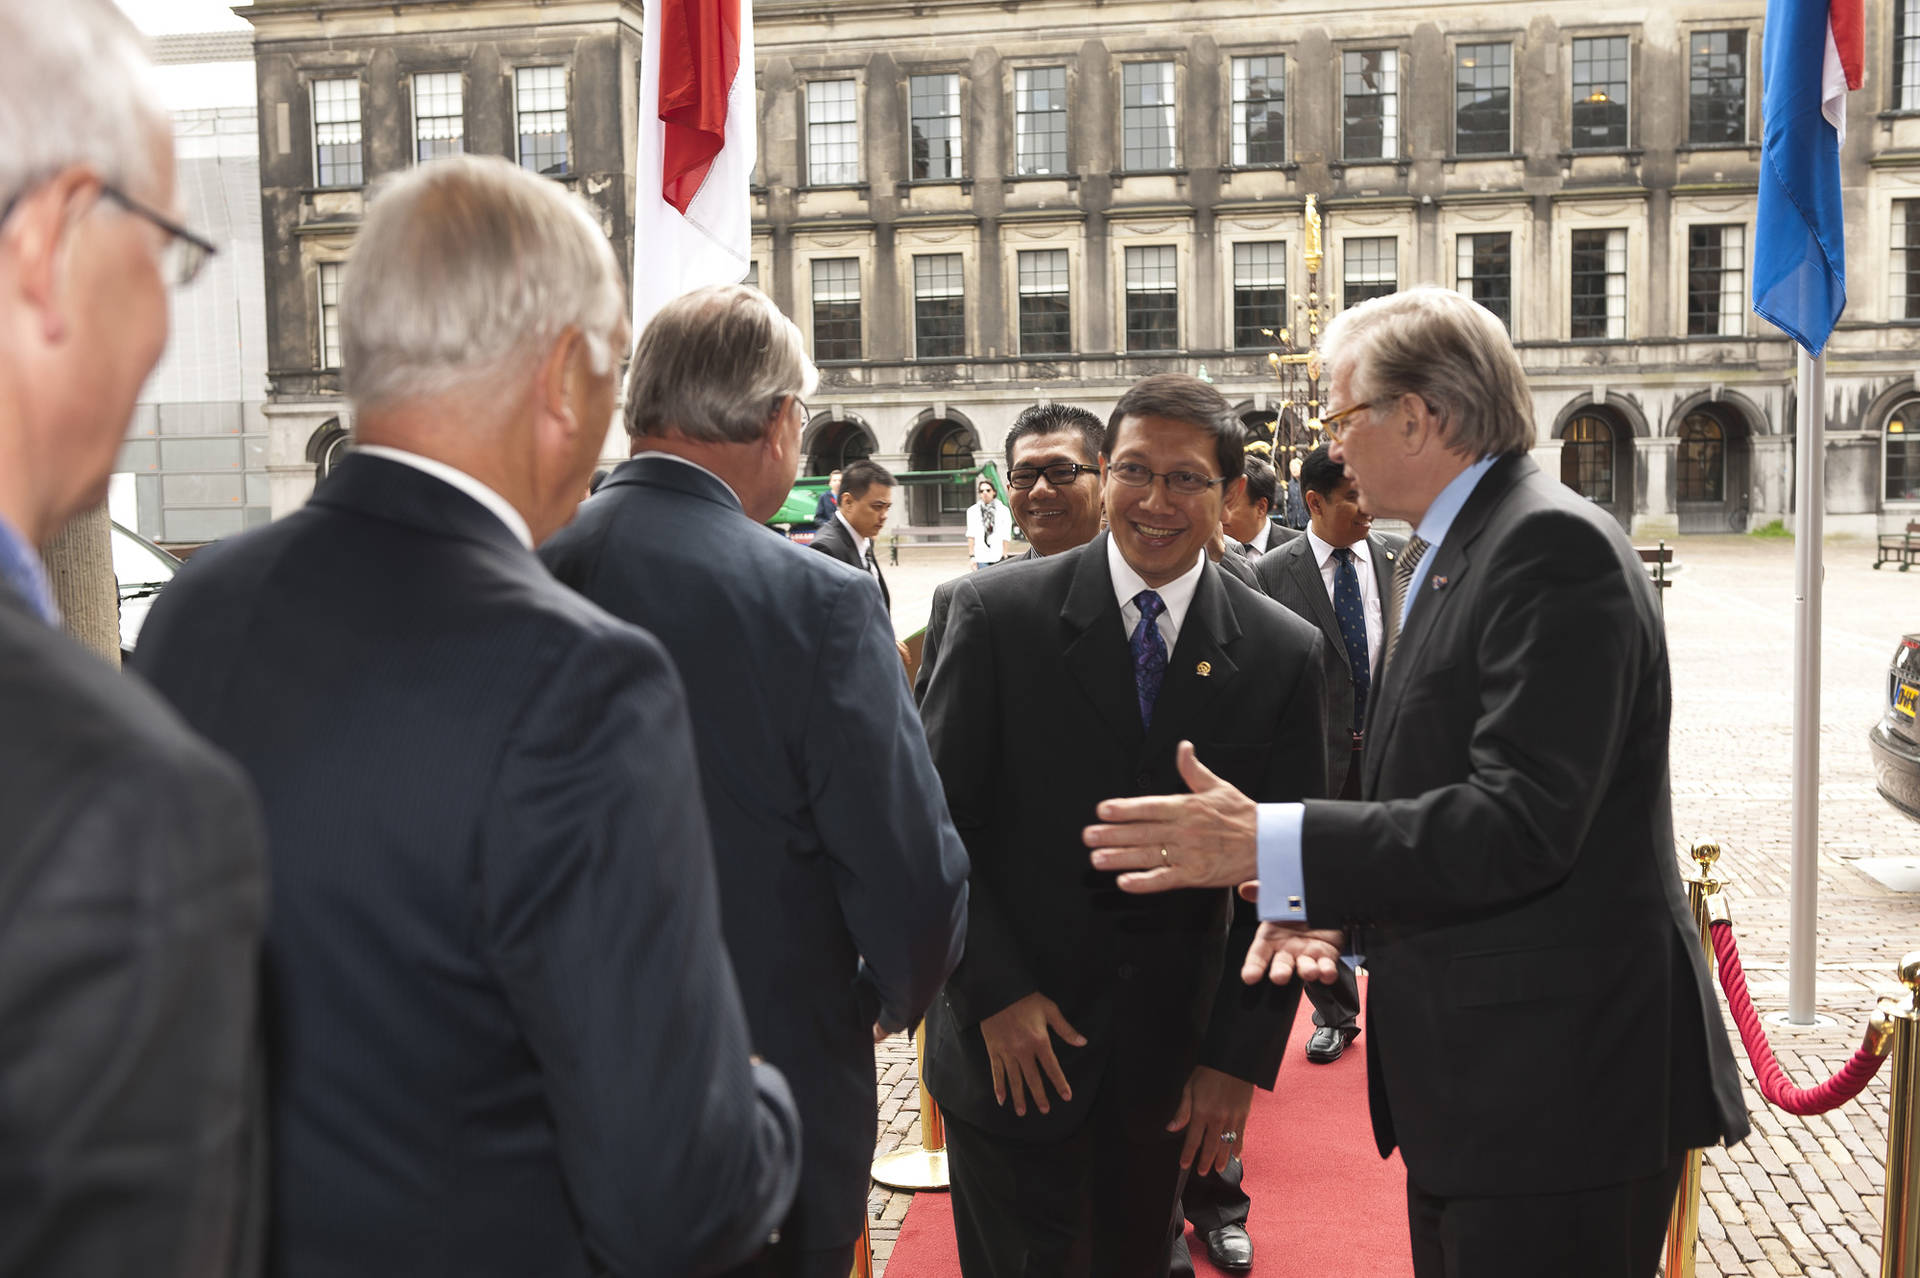 Onvangst Parlementsvoorzitter Indonesie door Kamervoorzitter Van der Linden